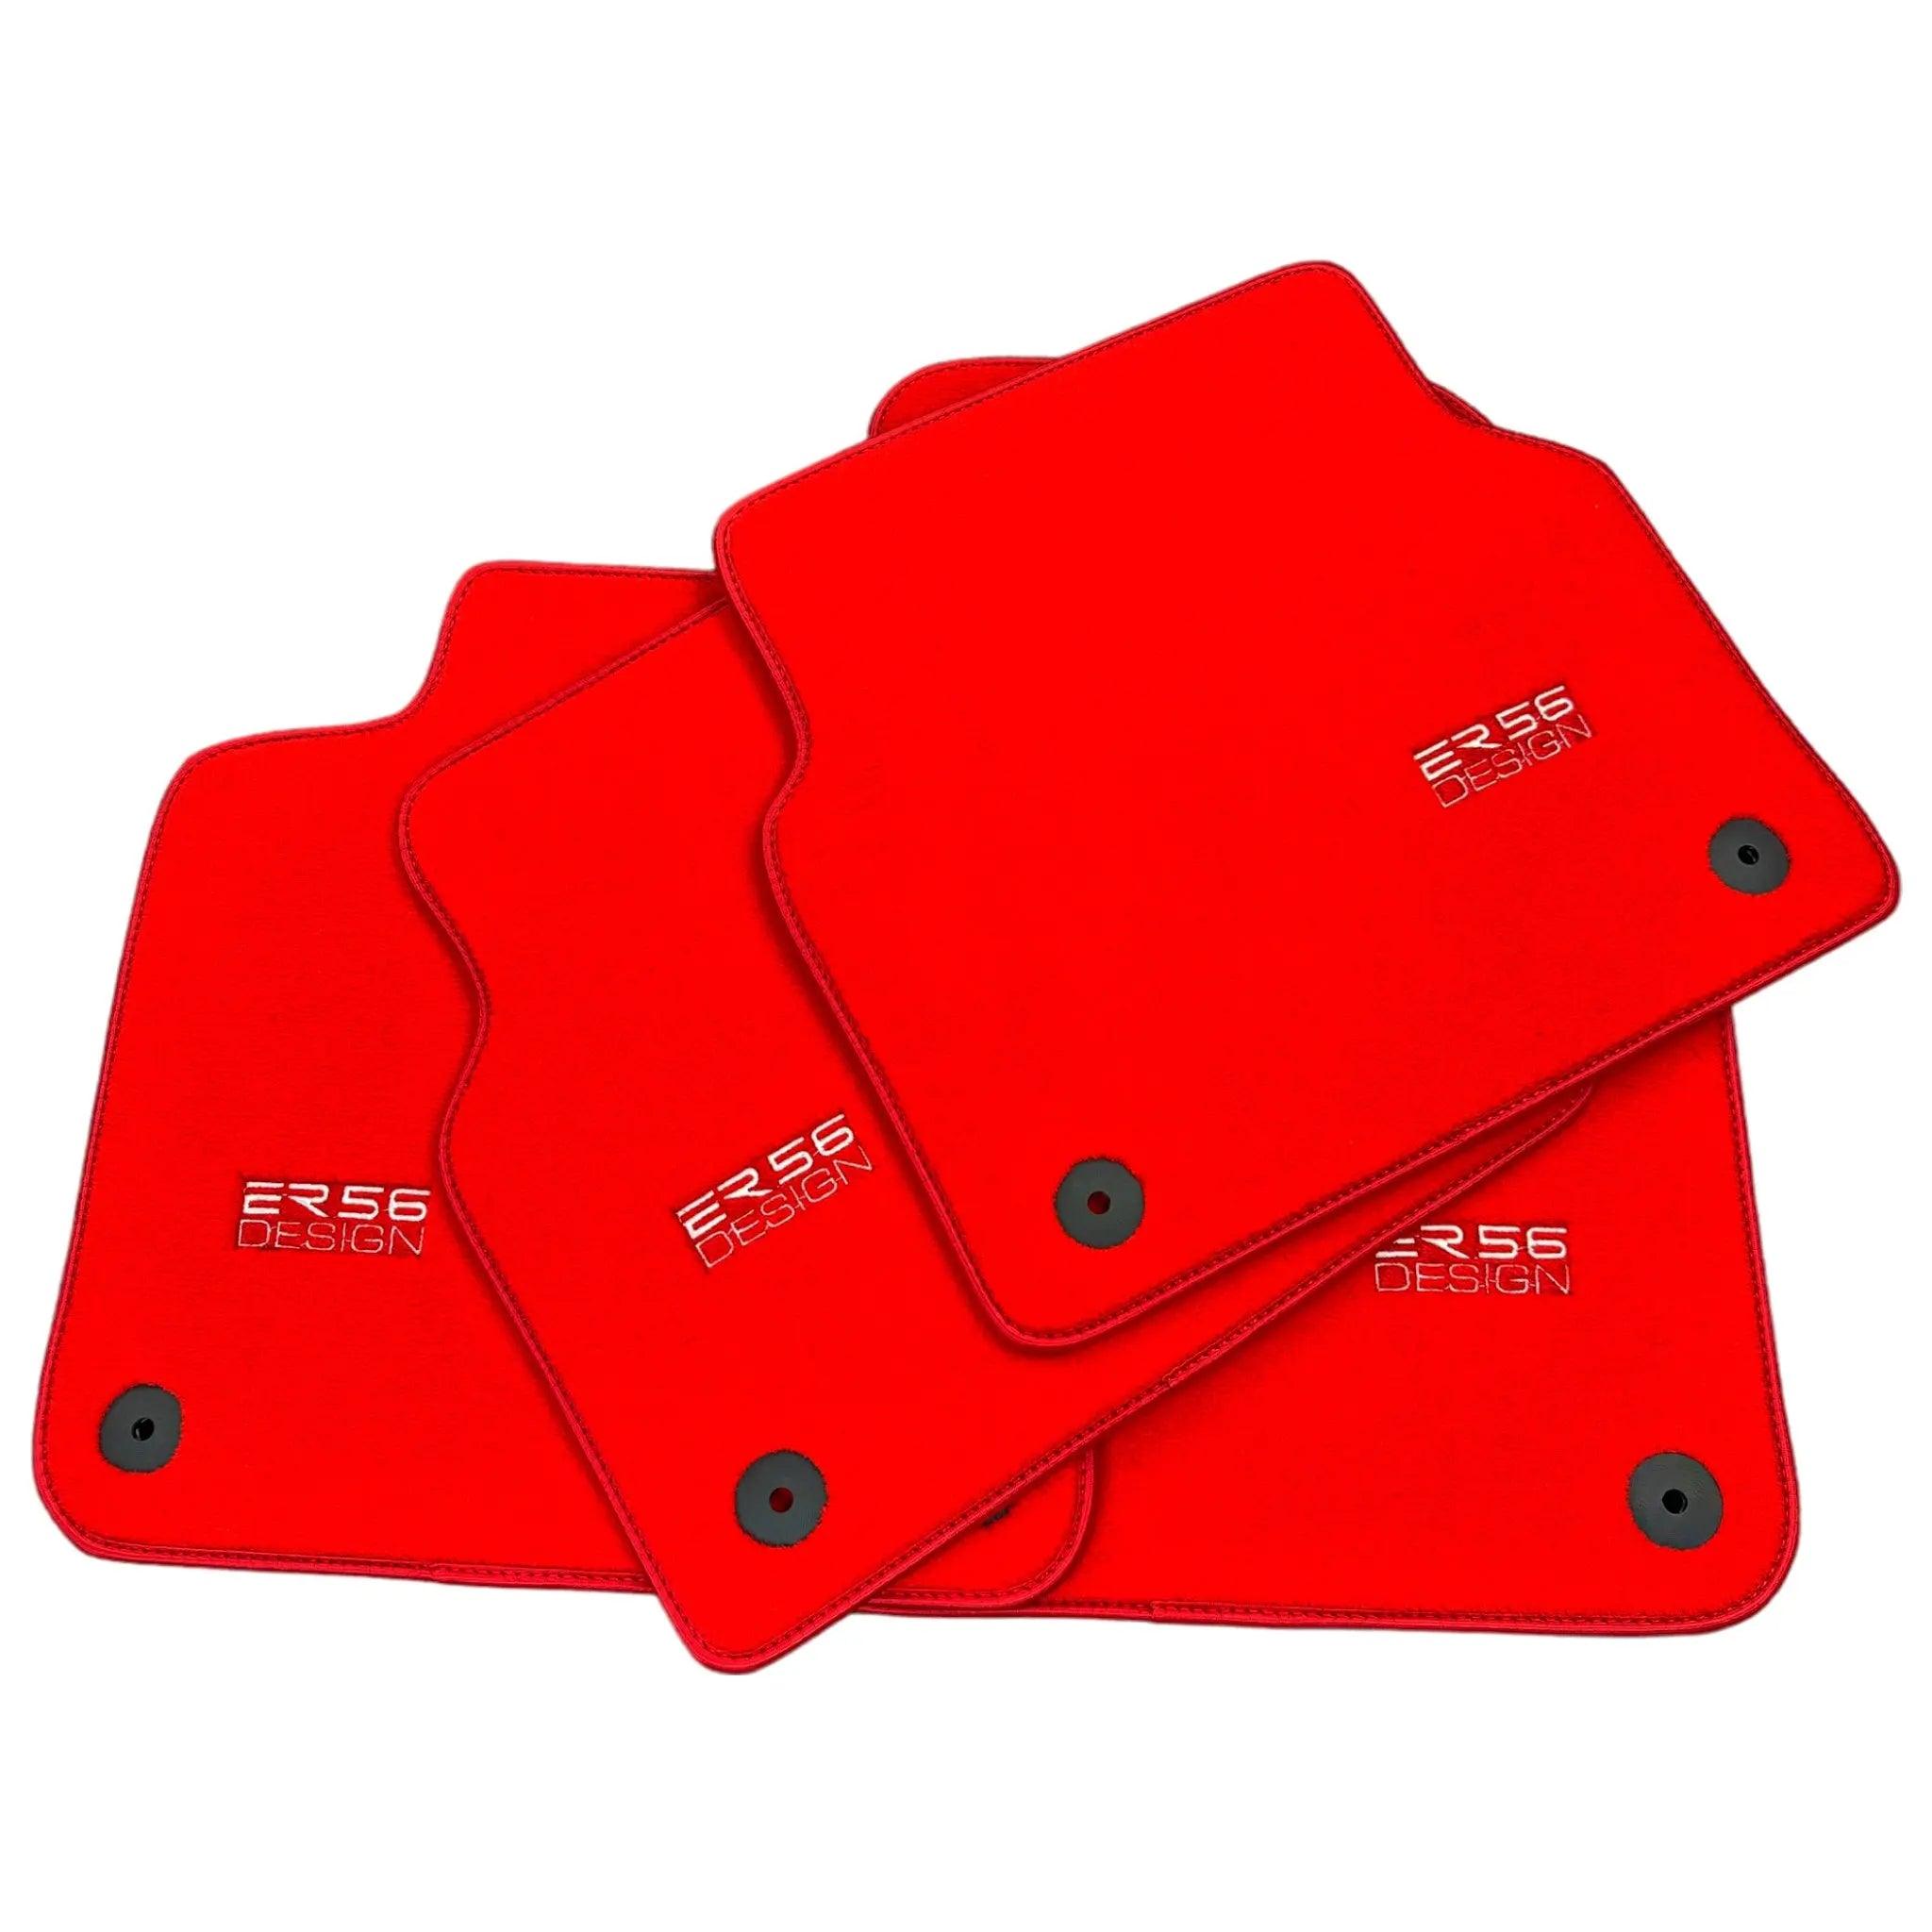 Red Floor Mats for A4 - B9 Avant (2019-2023) | ER56 Design